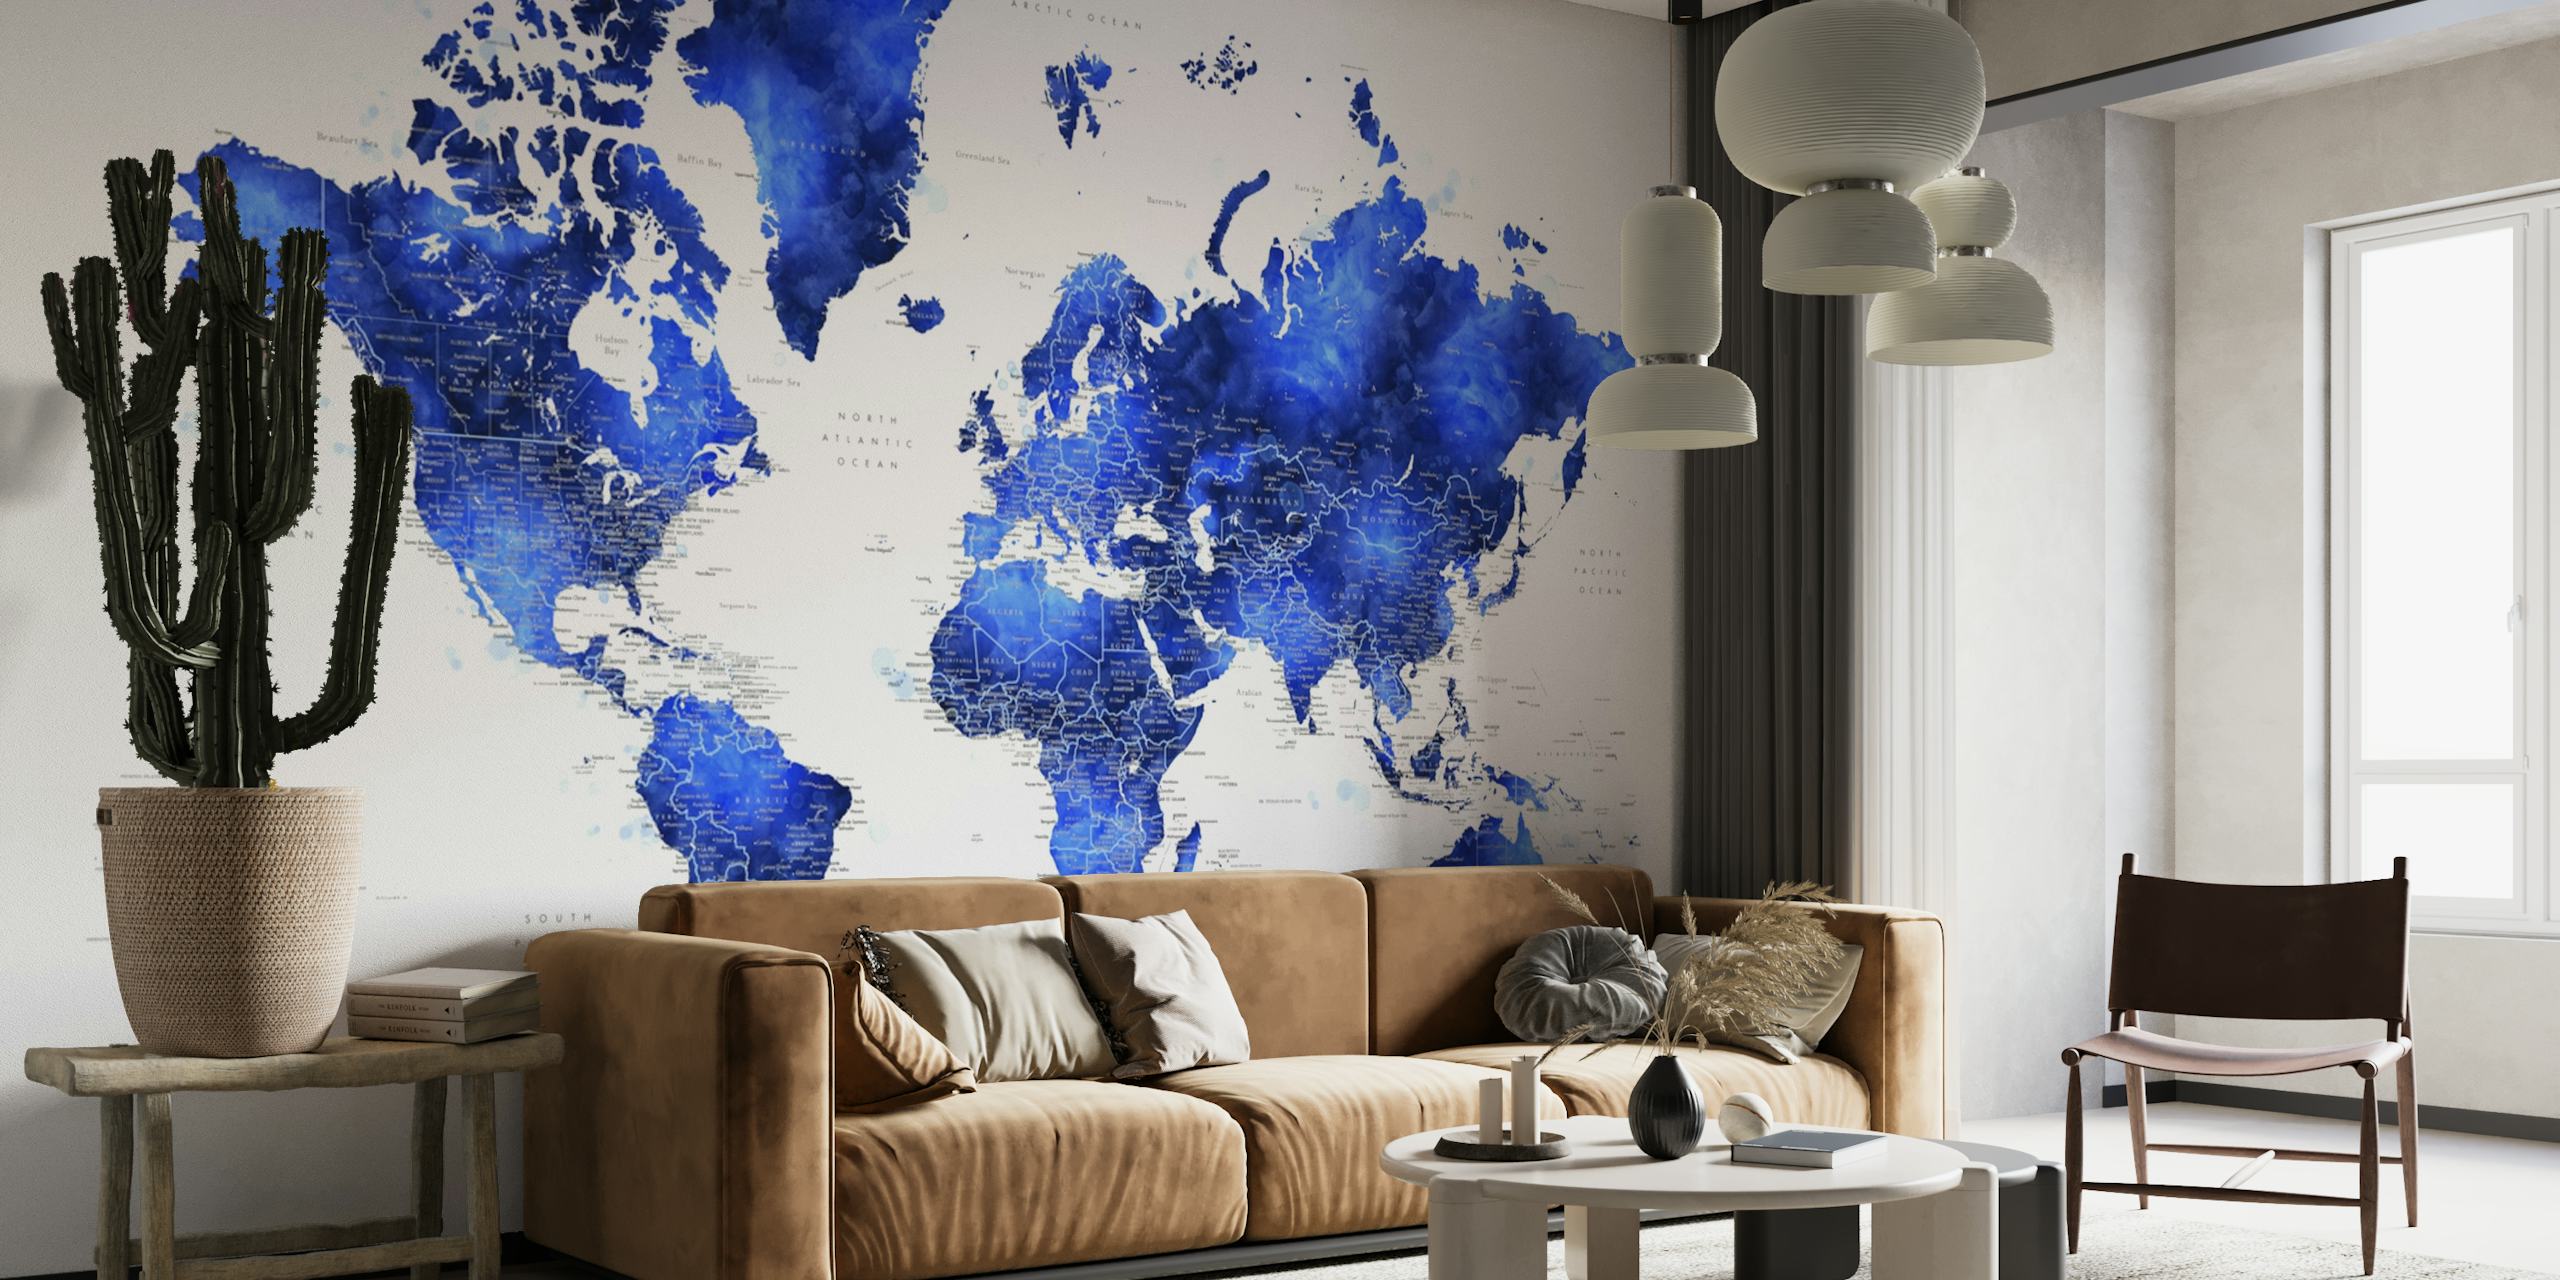 Detailed world map Gulzar papel pintado